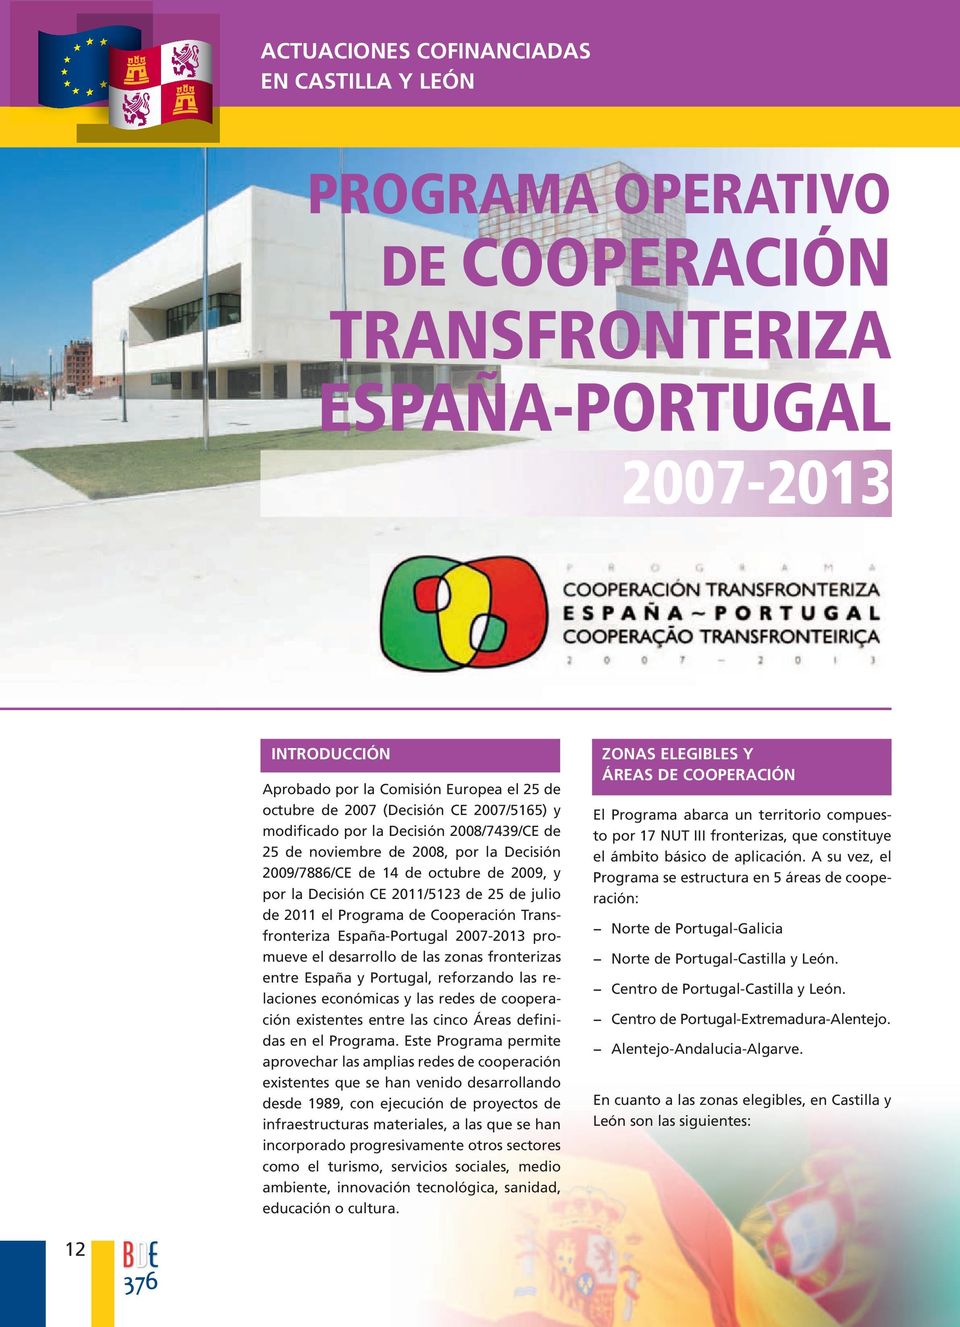 2011 el Programa de Cooperación Transfronteriza España-Portugal 2007-2013 promueve el desarrollo de las zonas fronterizas entre España y Portugal, reforzando las relaciones económicas y las redes de